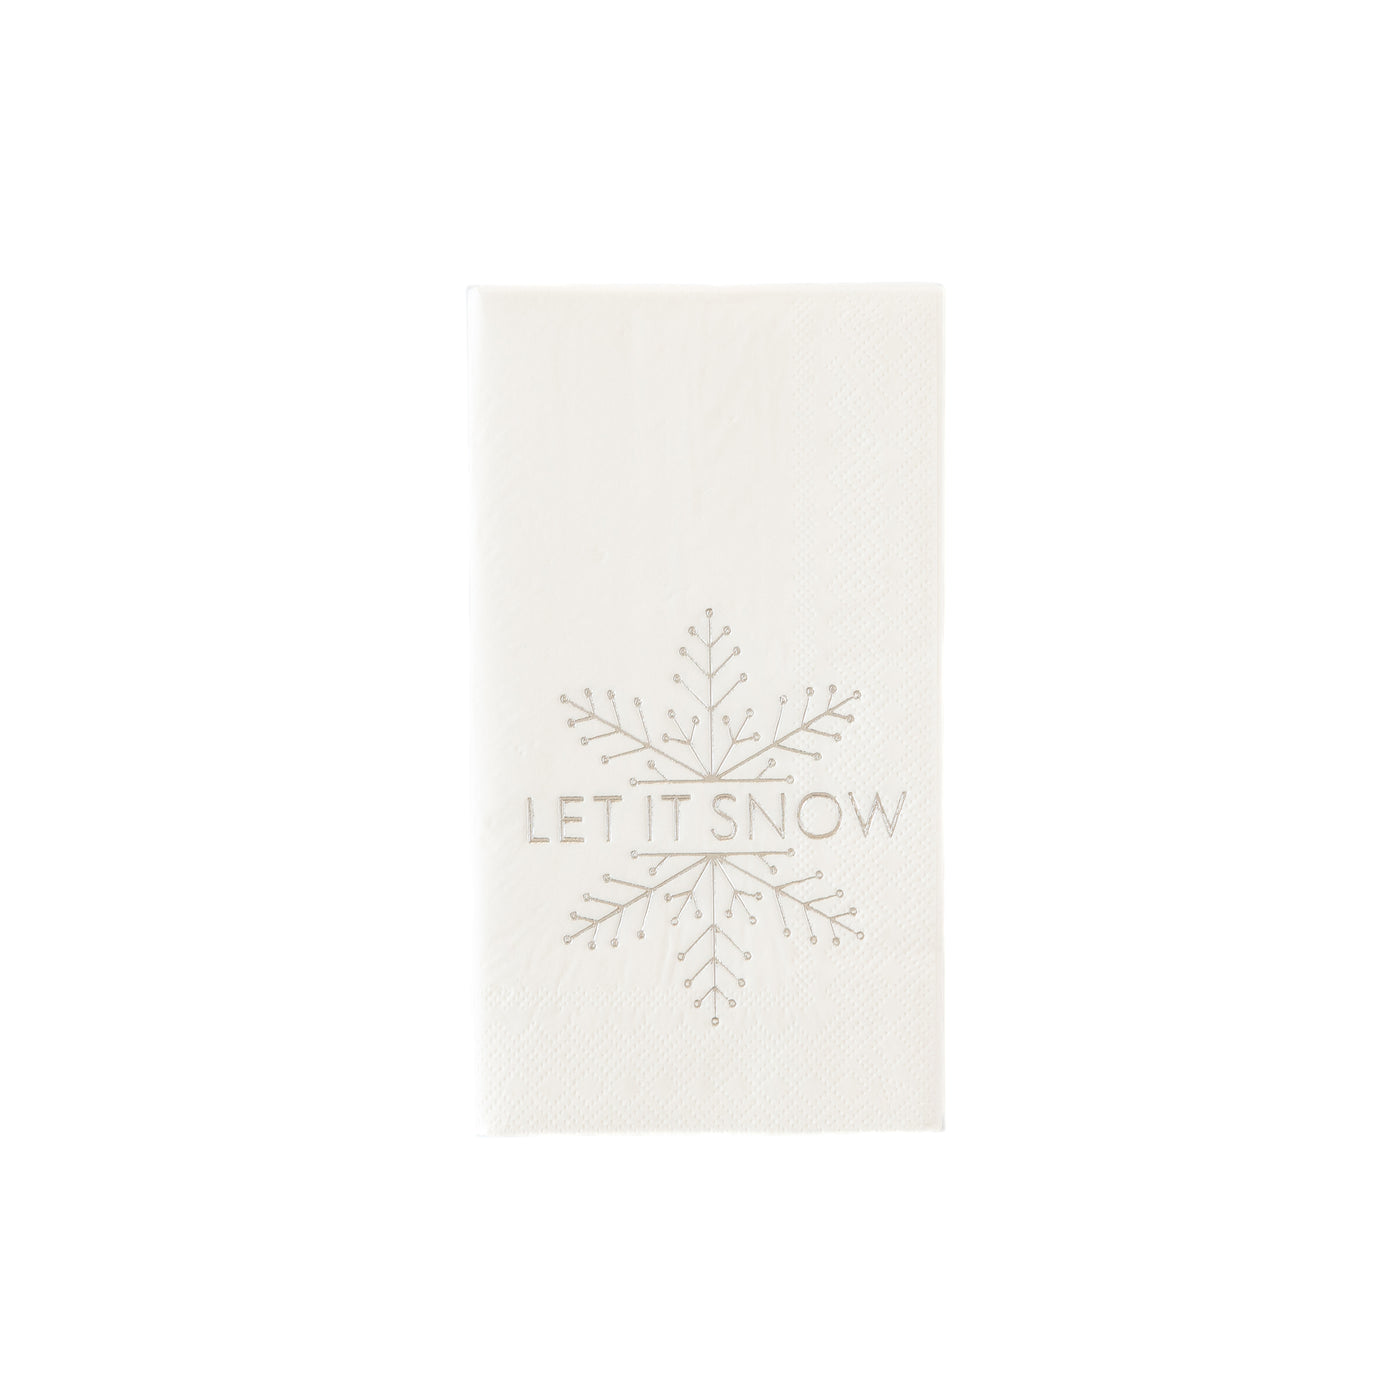 PLTS255A - Silver Foil Let it Snow Guest Towel Napkin